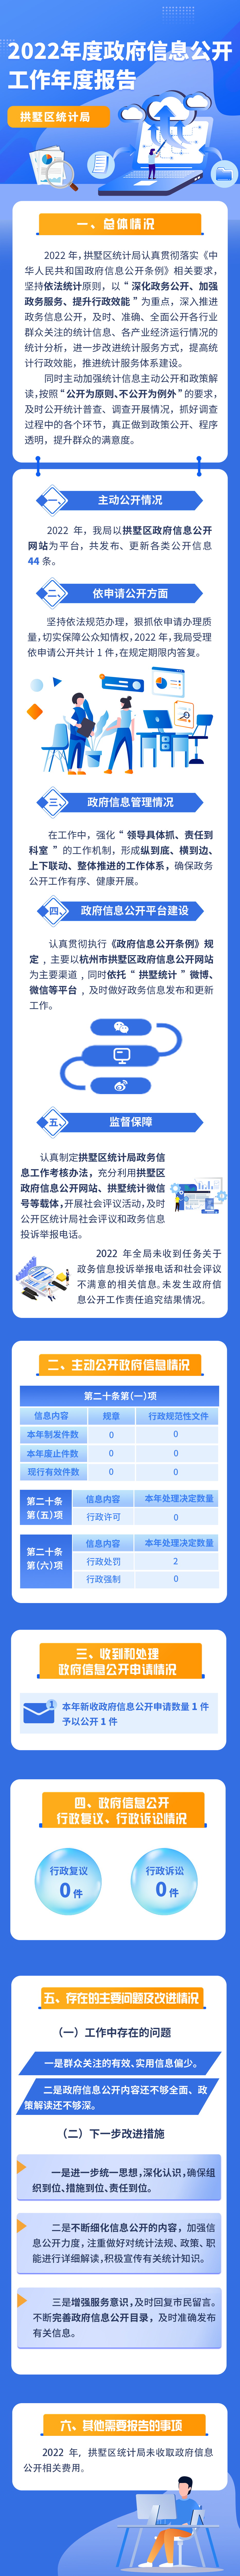 拱墅区统计局2022年政府信息公开年度报告.png